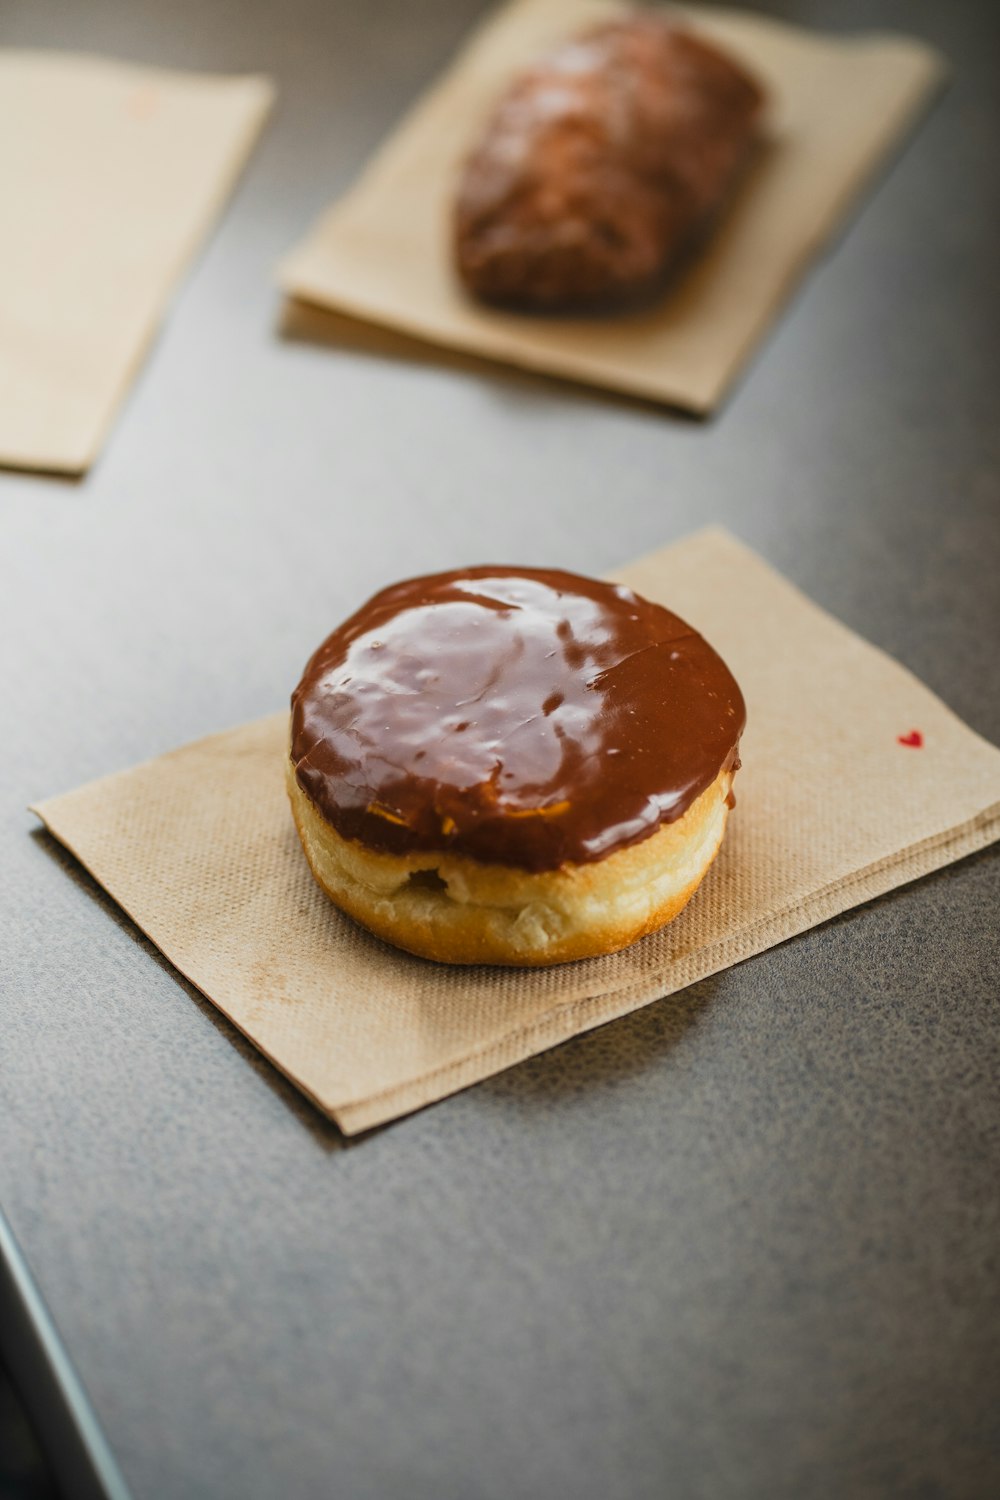 냅킨 위에 앉아 있는 초콜릿으로 덮인 도넛